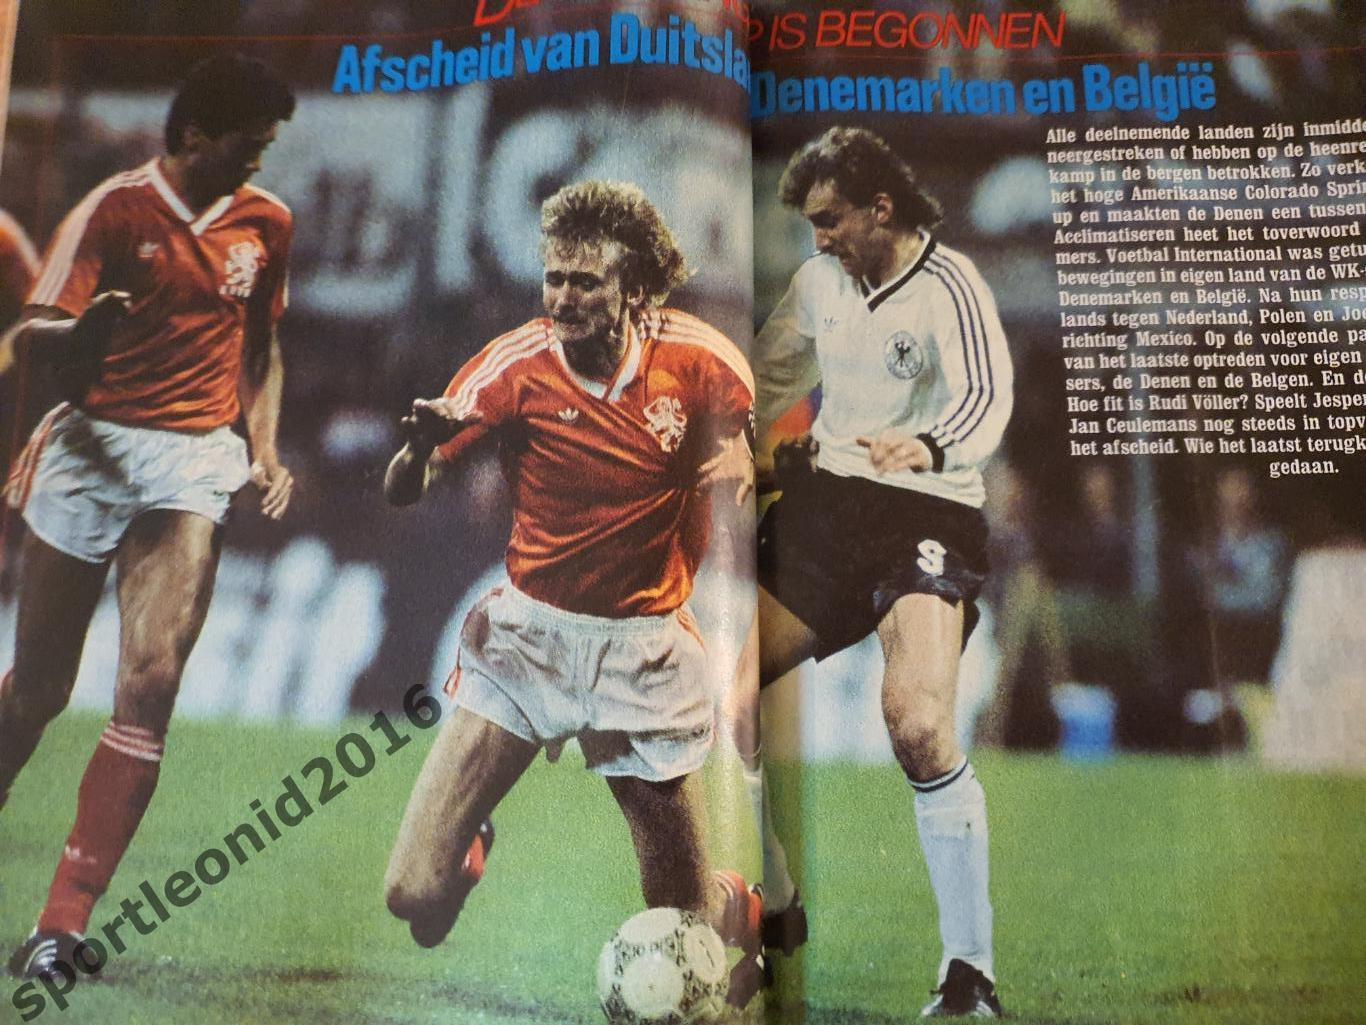 Voetbal International 1986.14 топ выпусков.В том числе итоговые к ЧМ-86.2 4